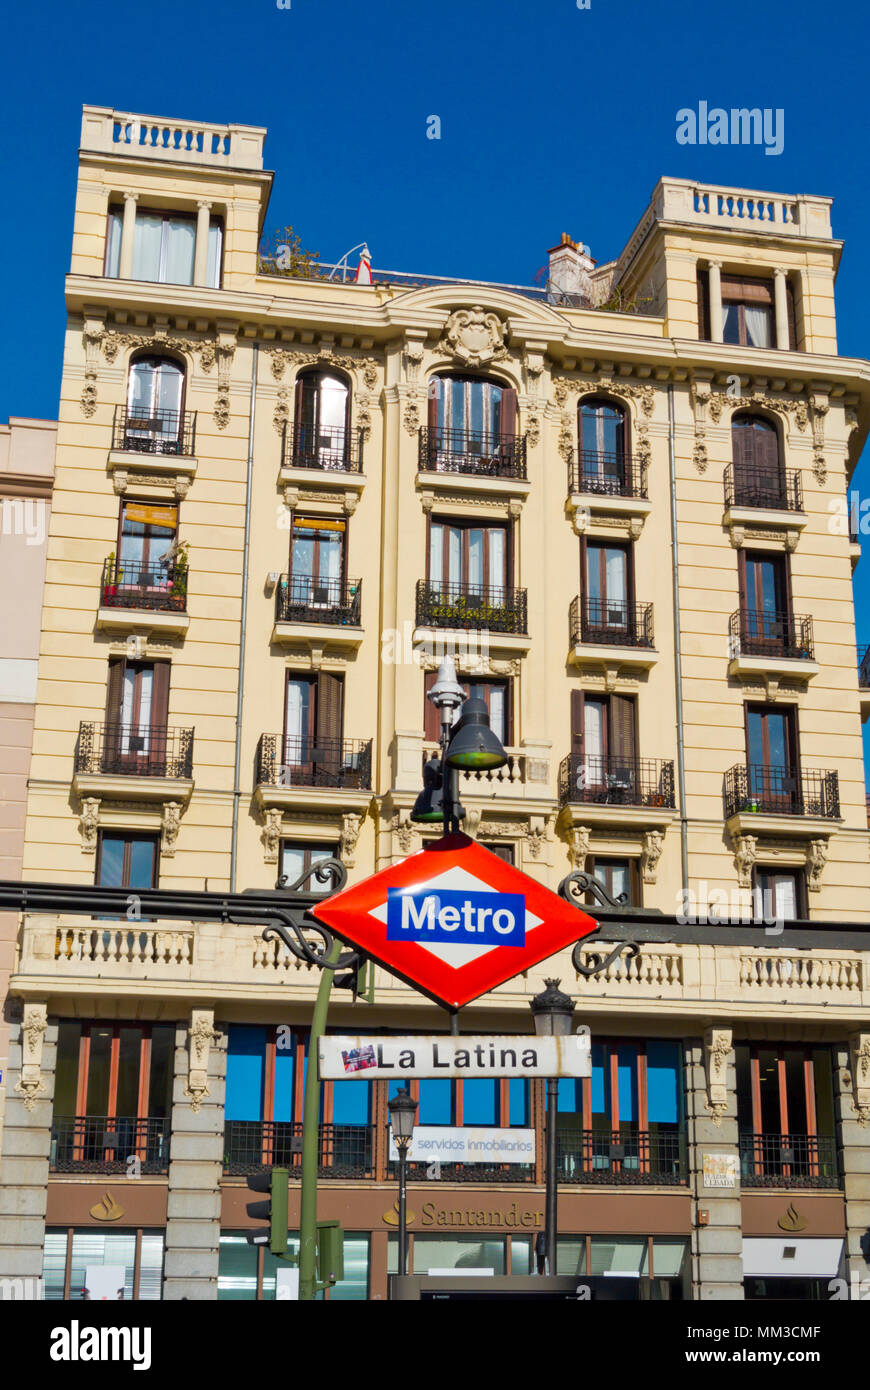 Estación de metro exterior, Plaza de la Cebada, La Latina, Madrid, España Foto de stock